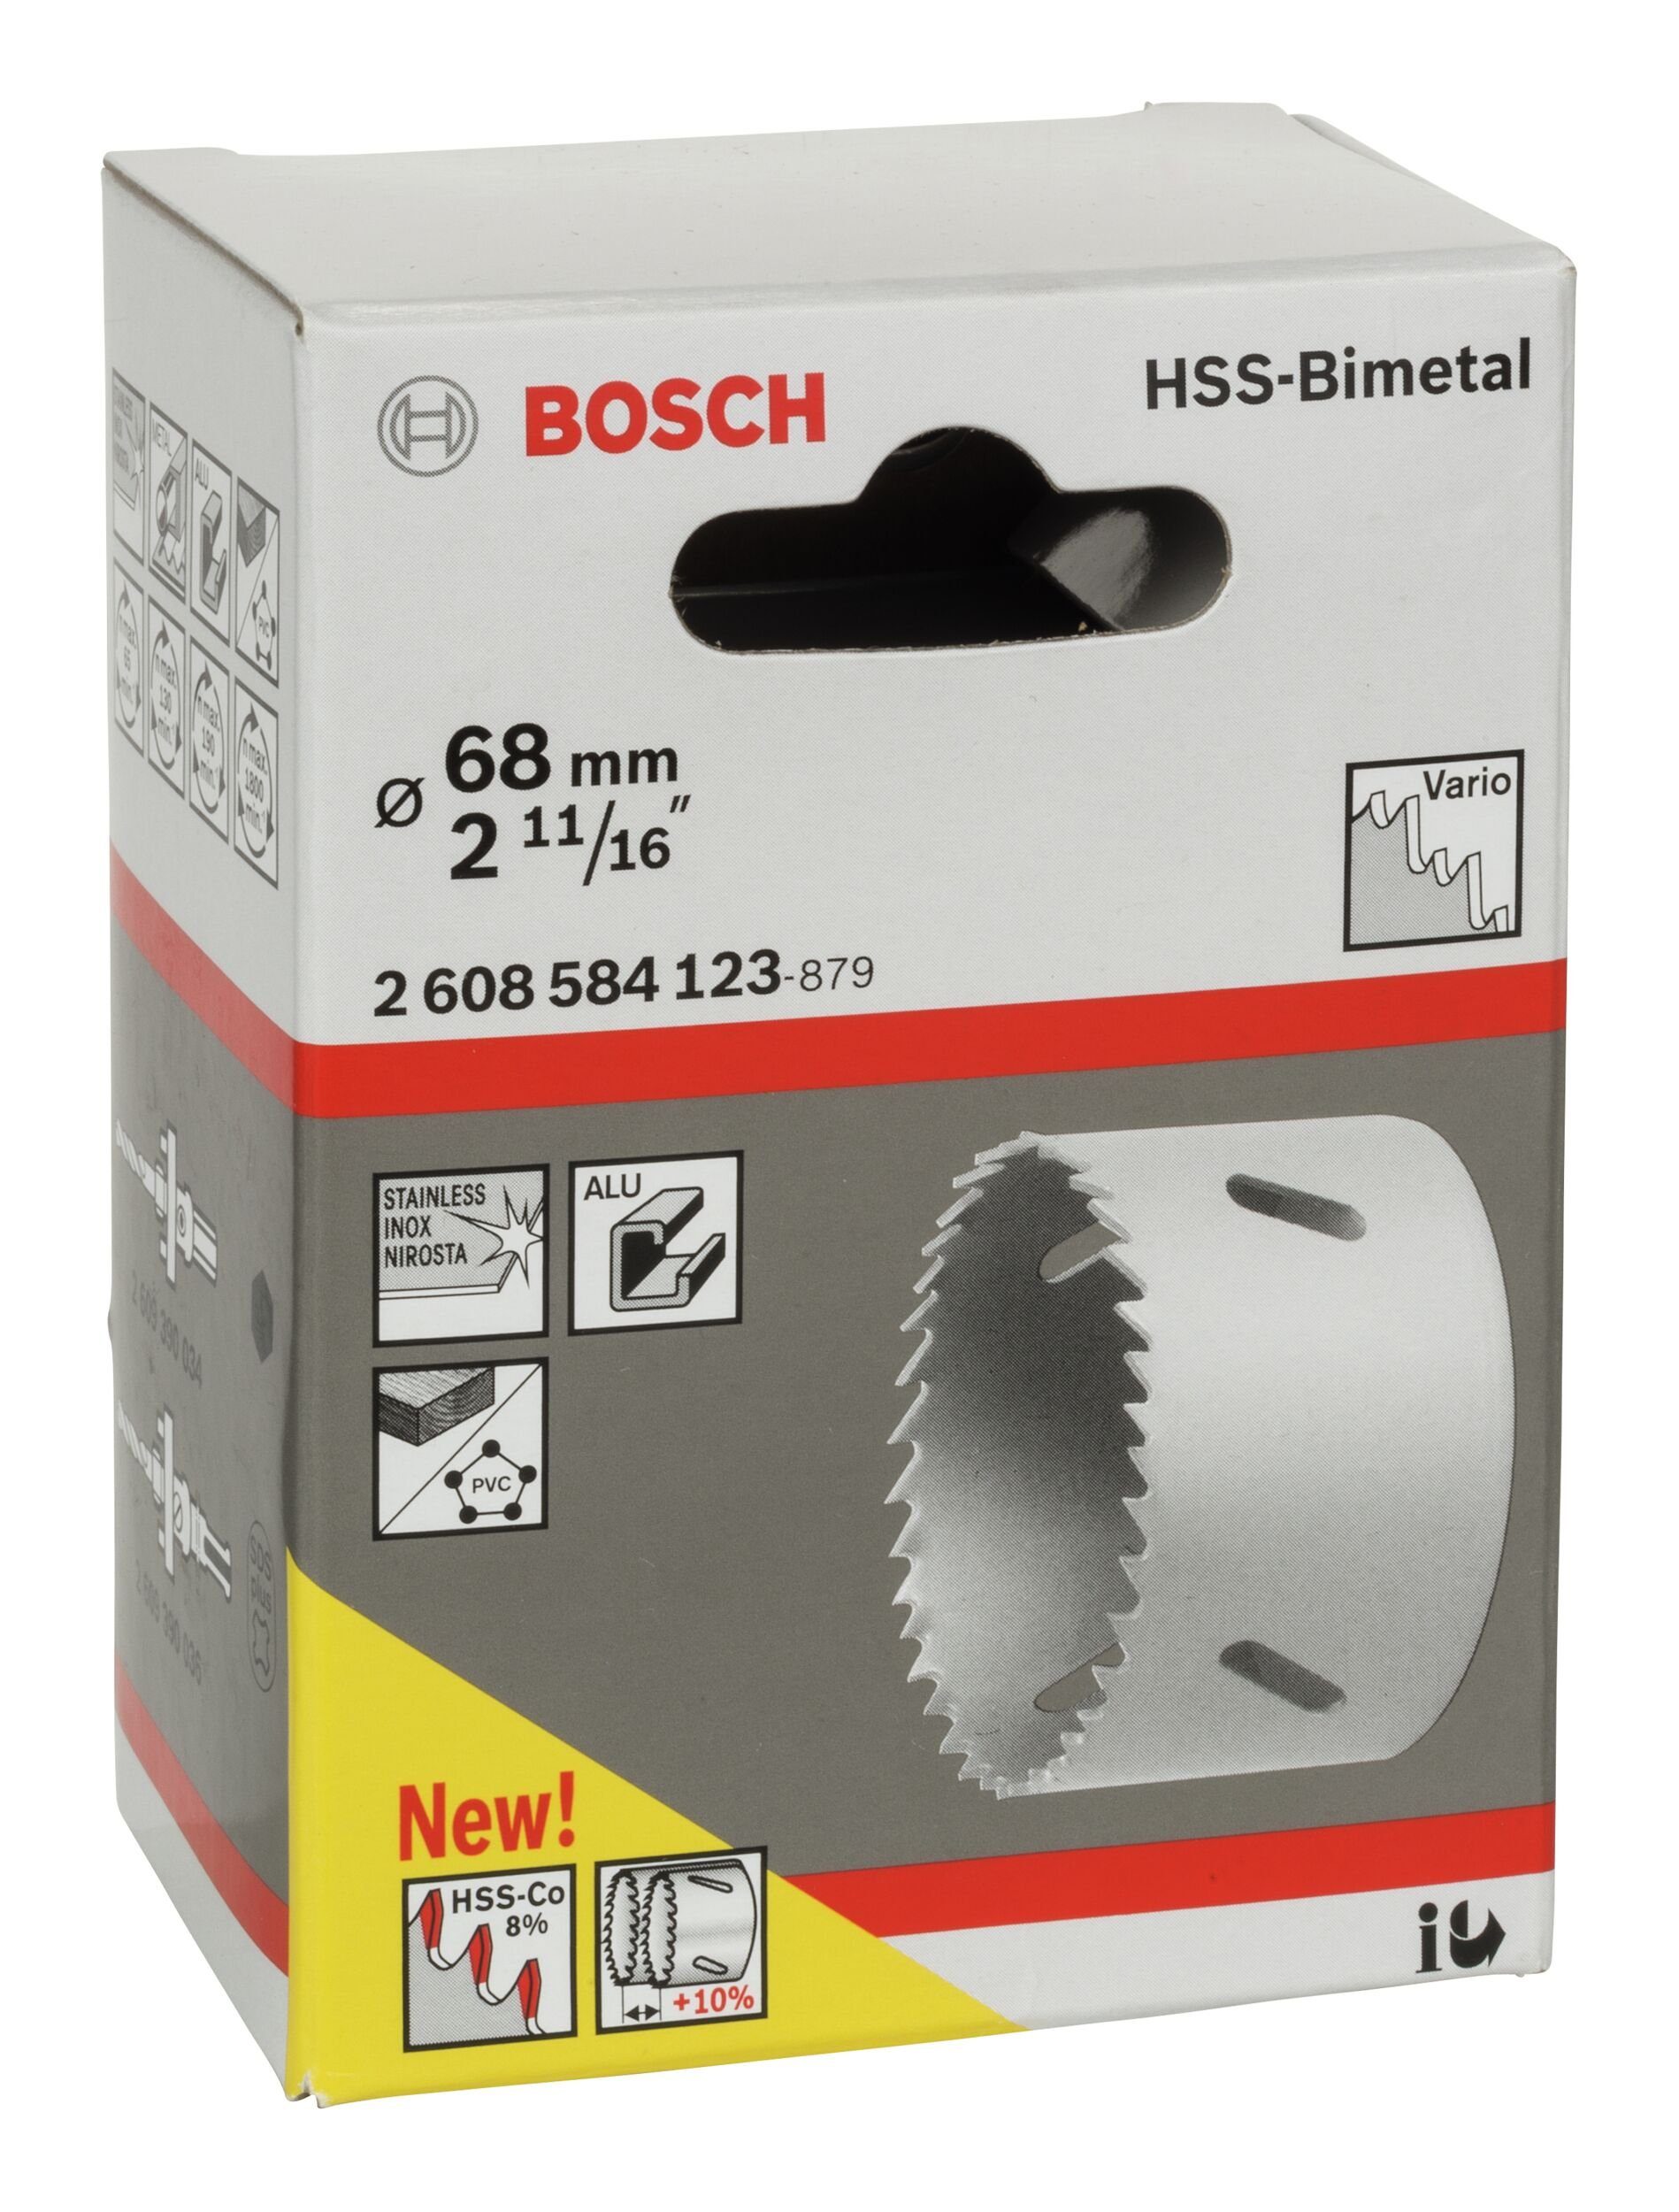 BOSCH Lochsäge, Ø 68 mm, für HSS-Bimetall 11/16" 2 / Standardadapter 